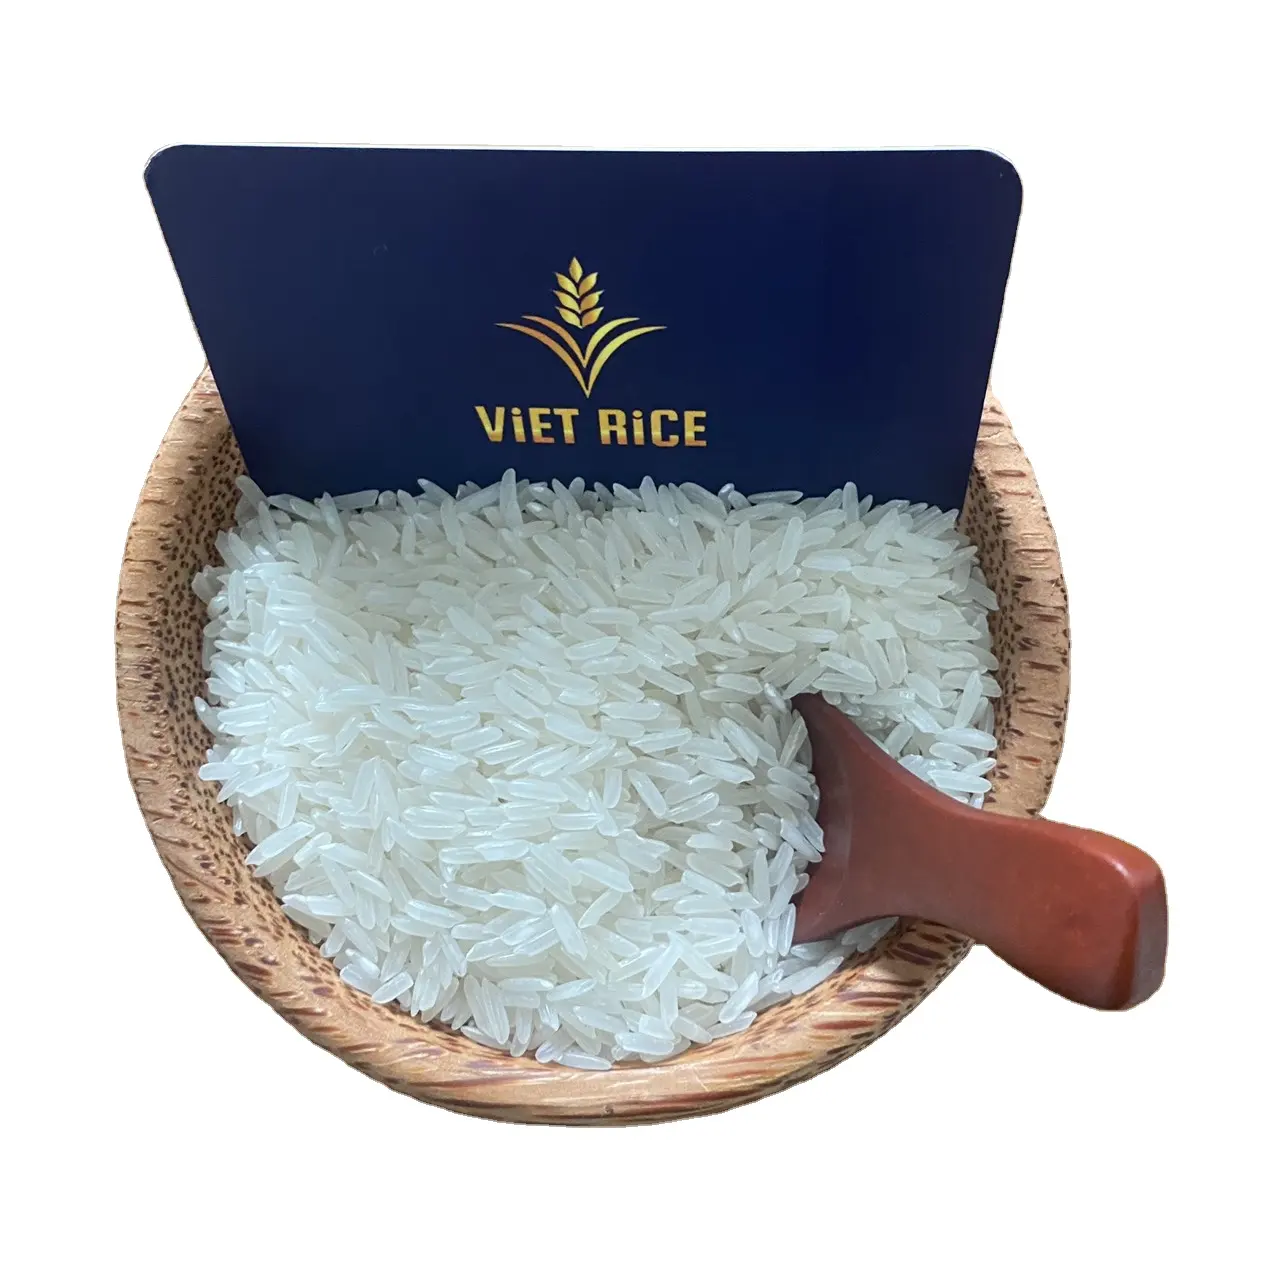 Gạo xuất khẩu quốc tế nhất-gạo trắng hạt dài kdm-Đáp ứng tiêu chuẩn xuất khẩu toàn cầu, Chất lượng cao, giá cả cạnh tranh